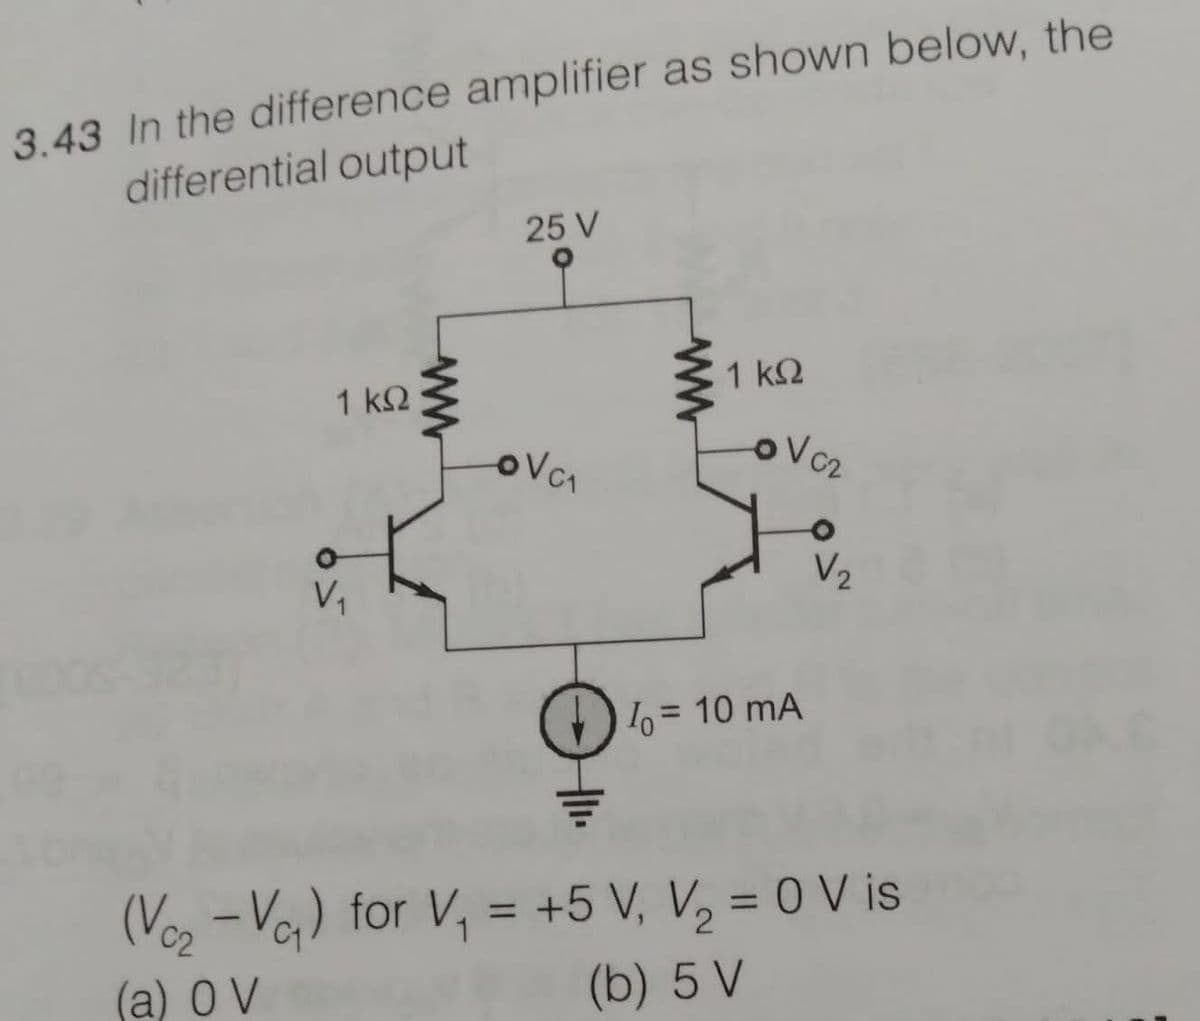 3.43 In the difference amplifier as shown below, the
differential output
25 V
1 ΚΩ
1 k2
V1
V2
= 10 mA
(Voz -Vo) for V, = +5 V, V, = 0 V is
%3D
%3D
(a) O V
(b) 5 V
ww
